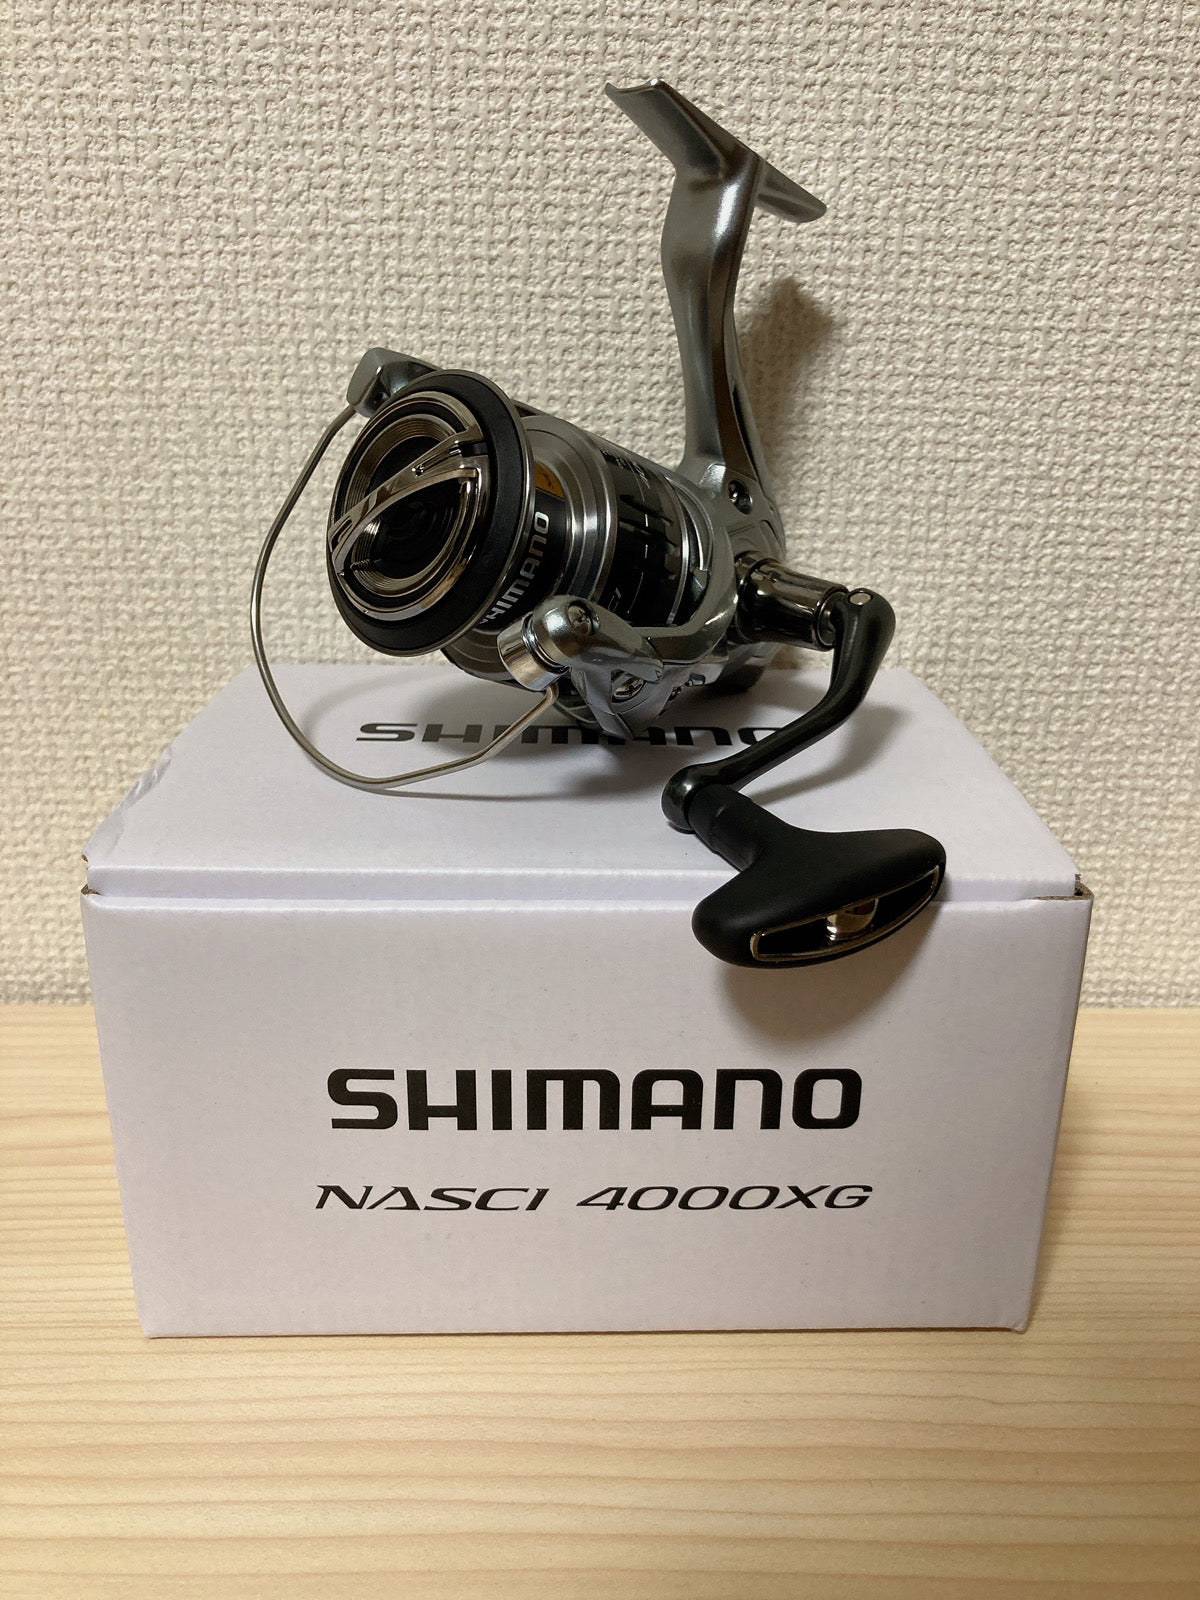 NEW Shimano Nasci 4000XG Spinning Reel